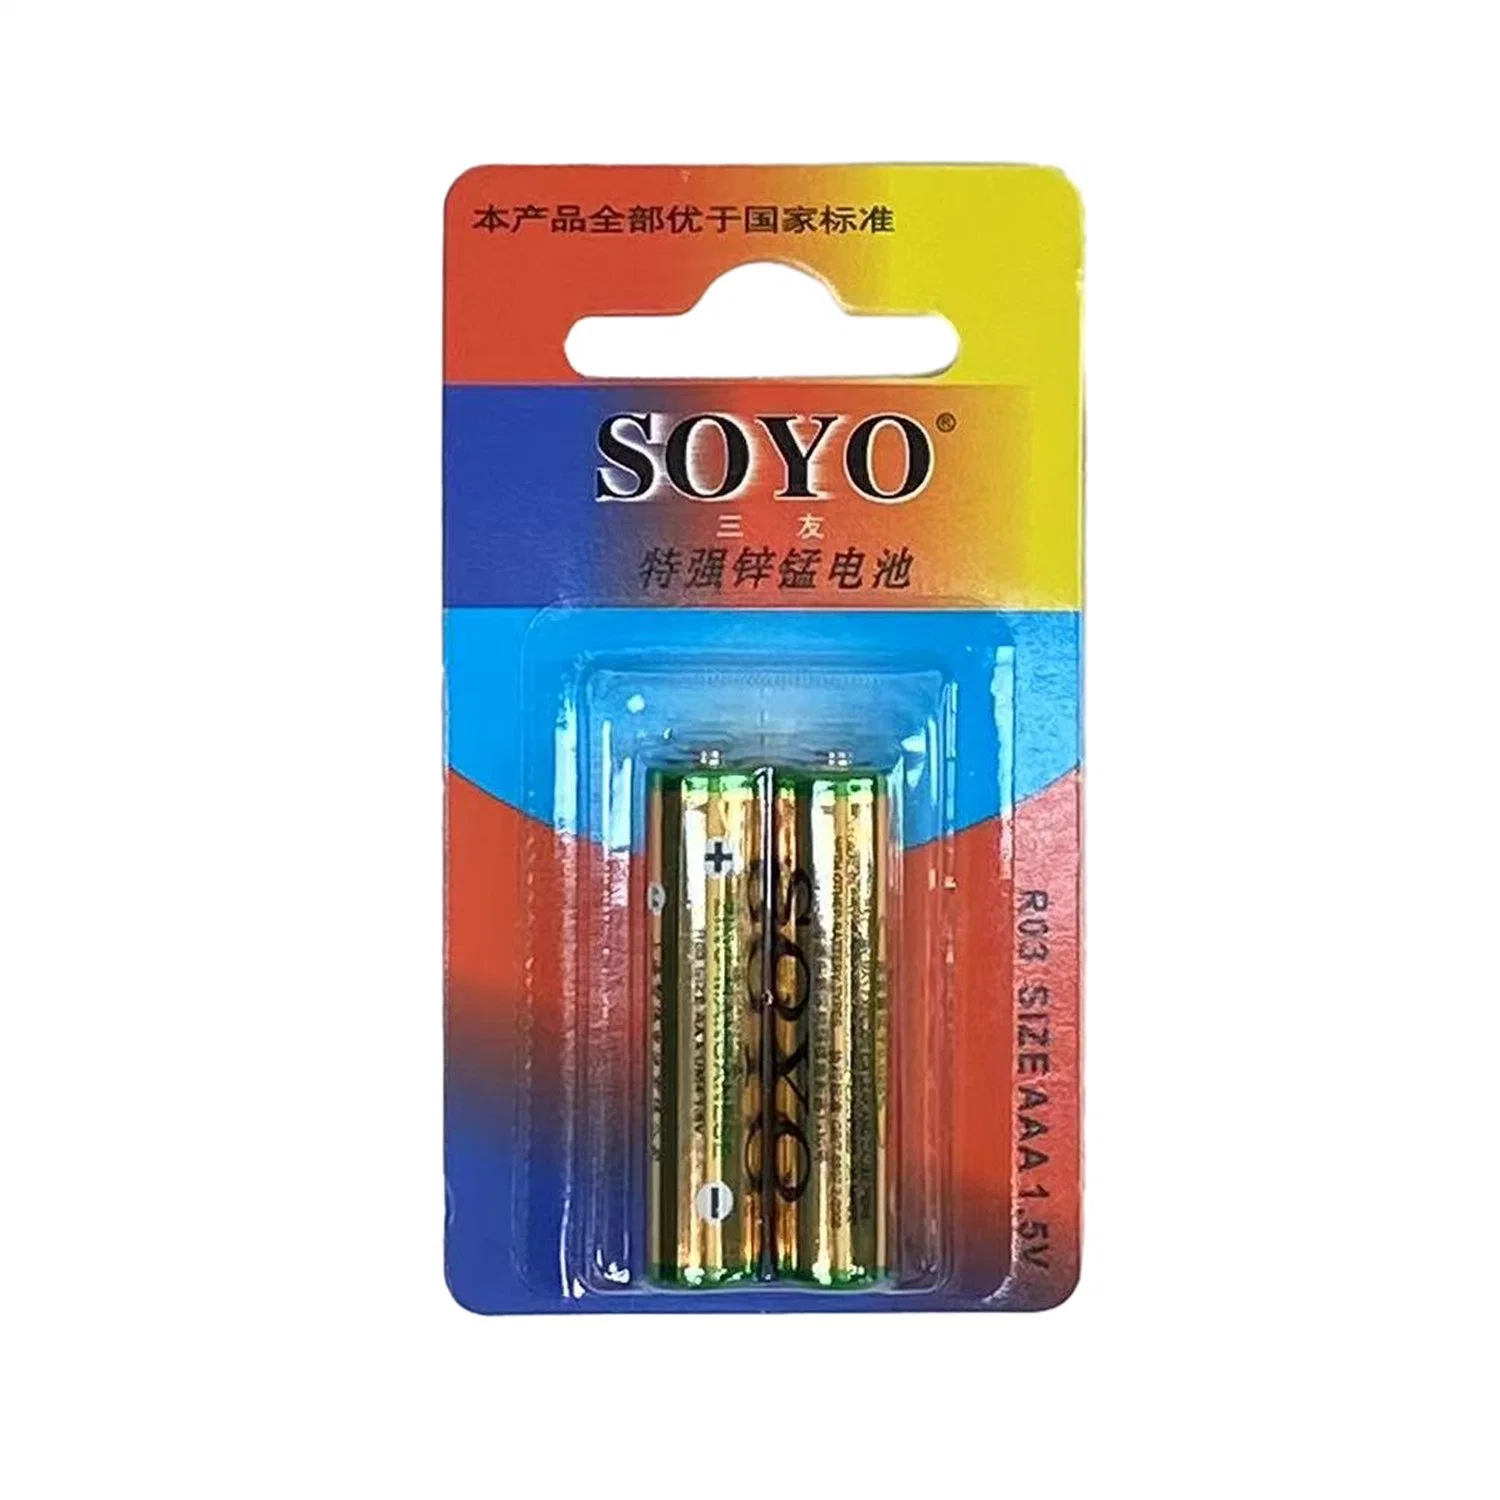 Высококачественная сухая батарея Soyo Carbon Zinc R03 1,5 В.